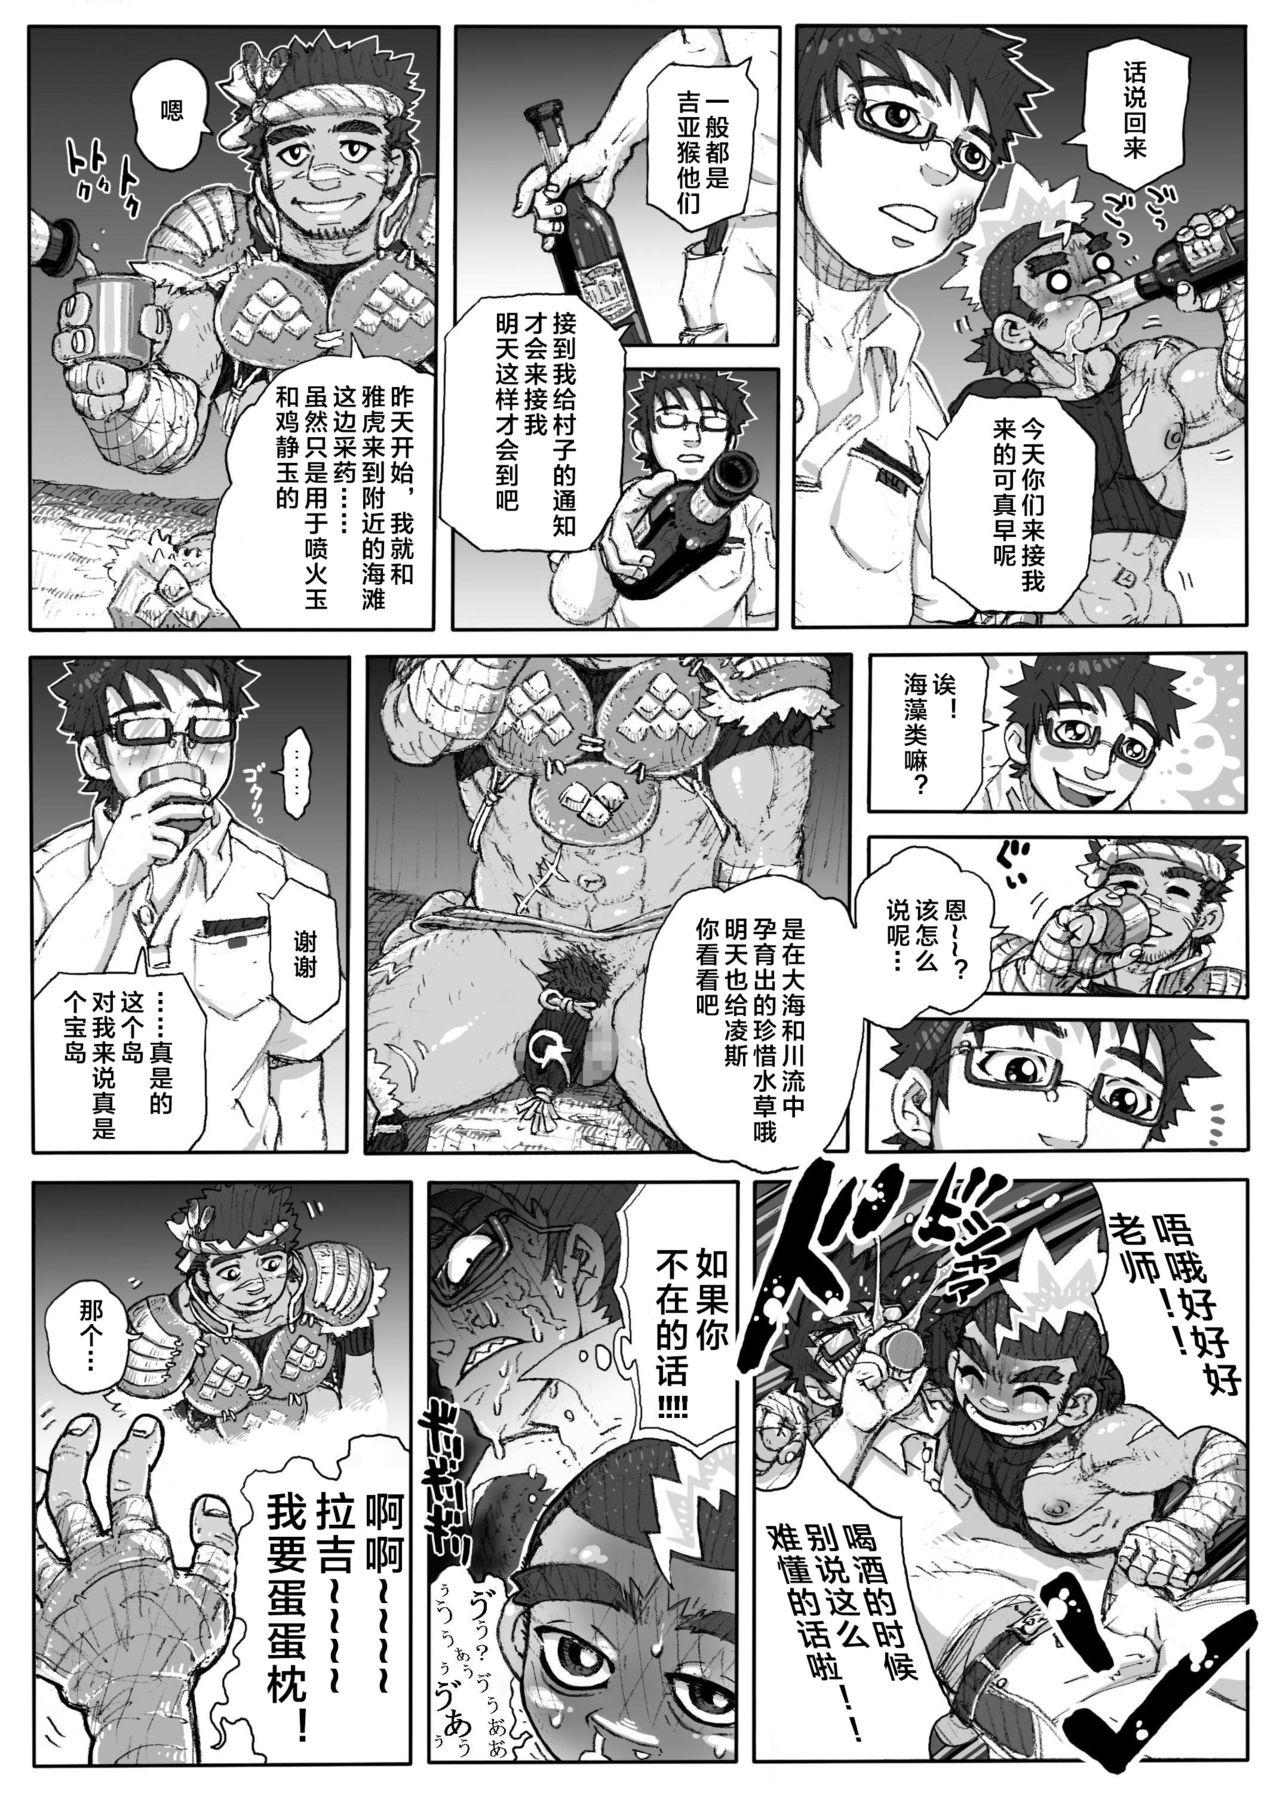 Stepdad Hepoe no Kuni kara 1 - Mizu no Gakusha Sensei, Hi no Buzoku no Saru ni Hazukashimerareru no Maki Czech - Page 11